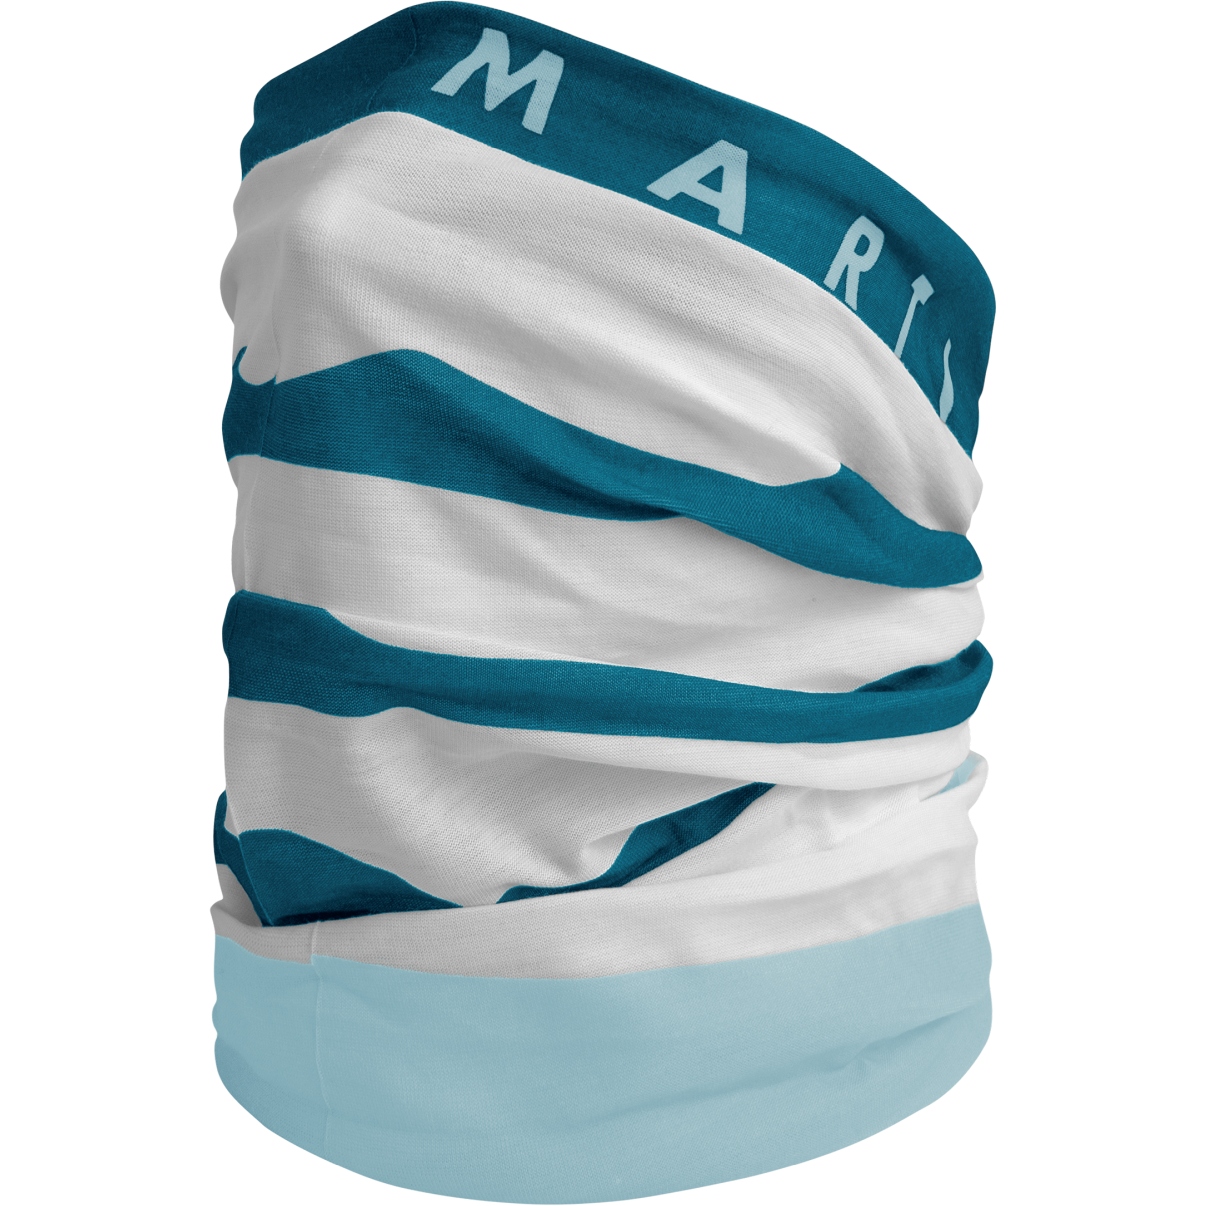 Produktbild von Martini Sportswear All Passion W25 Multifunktionstuch - lake/ice